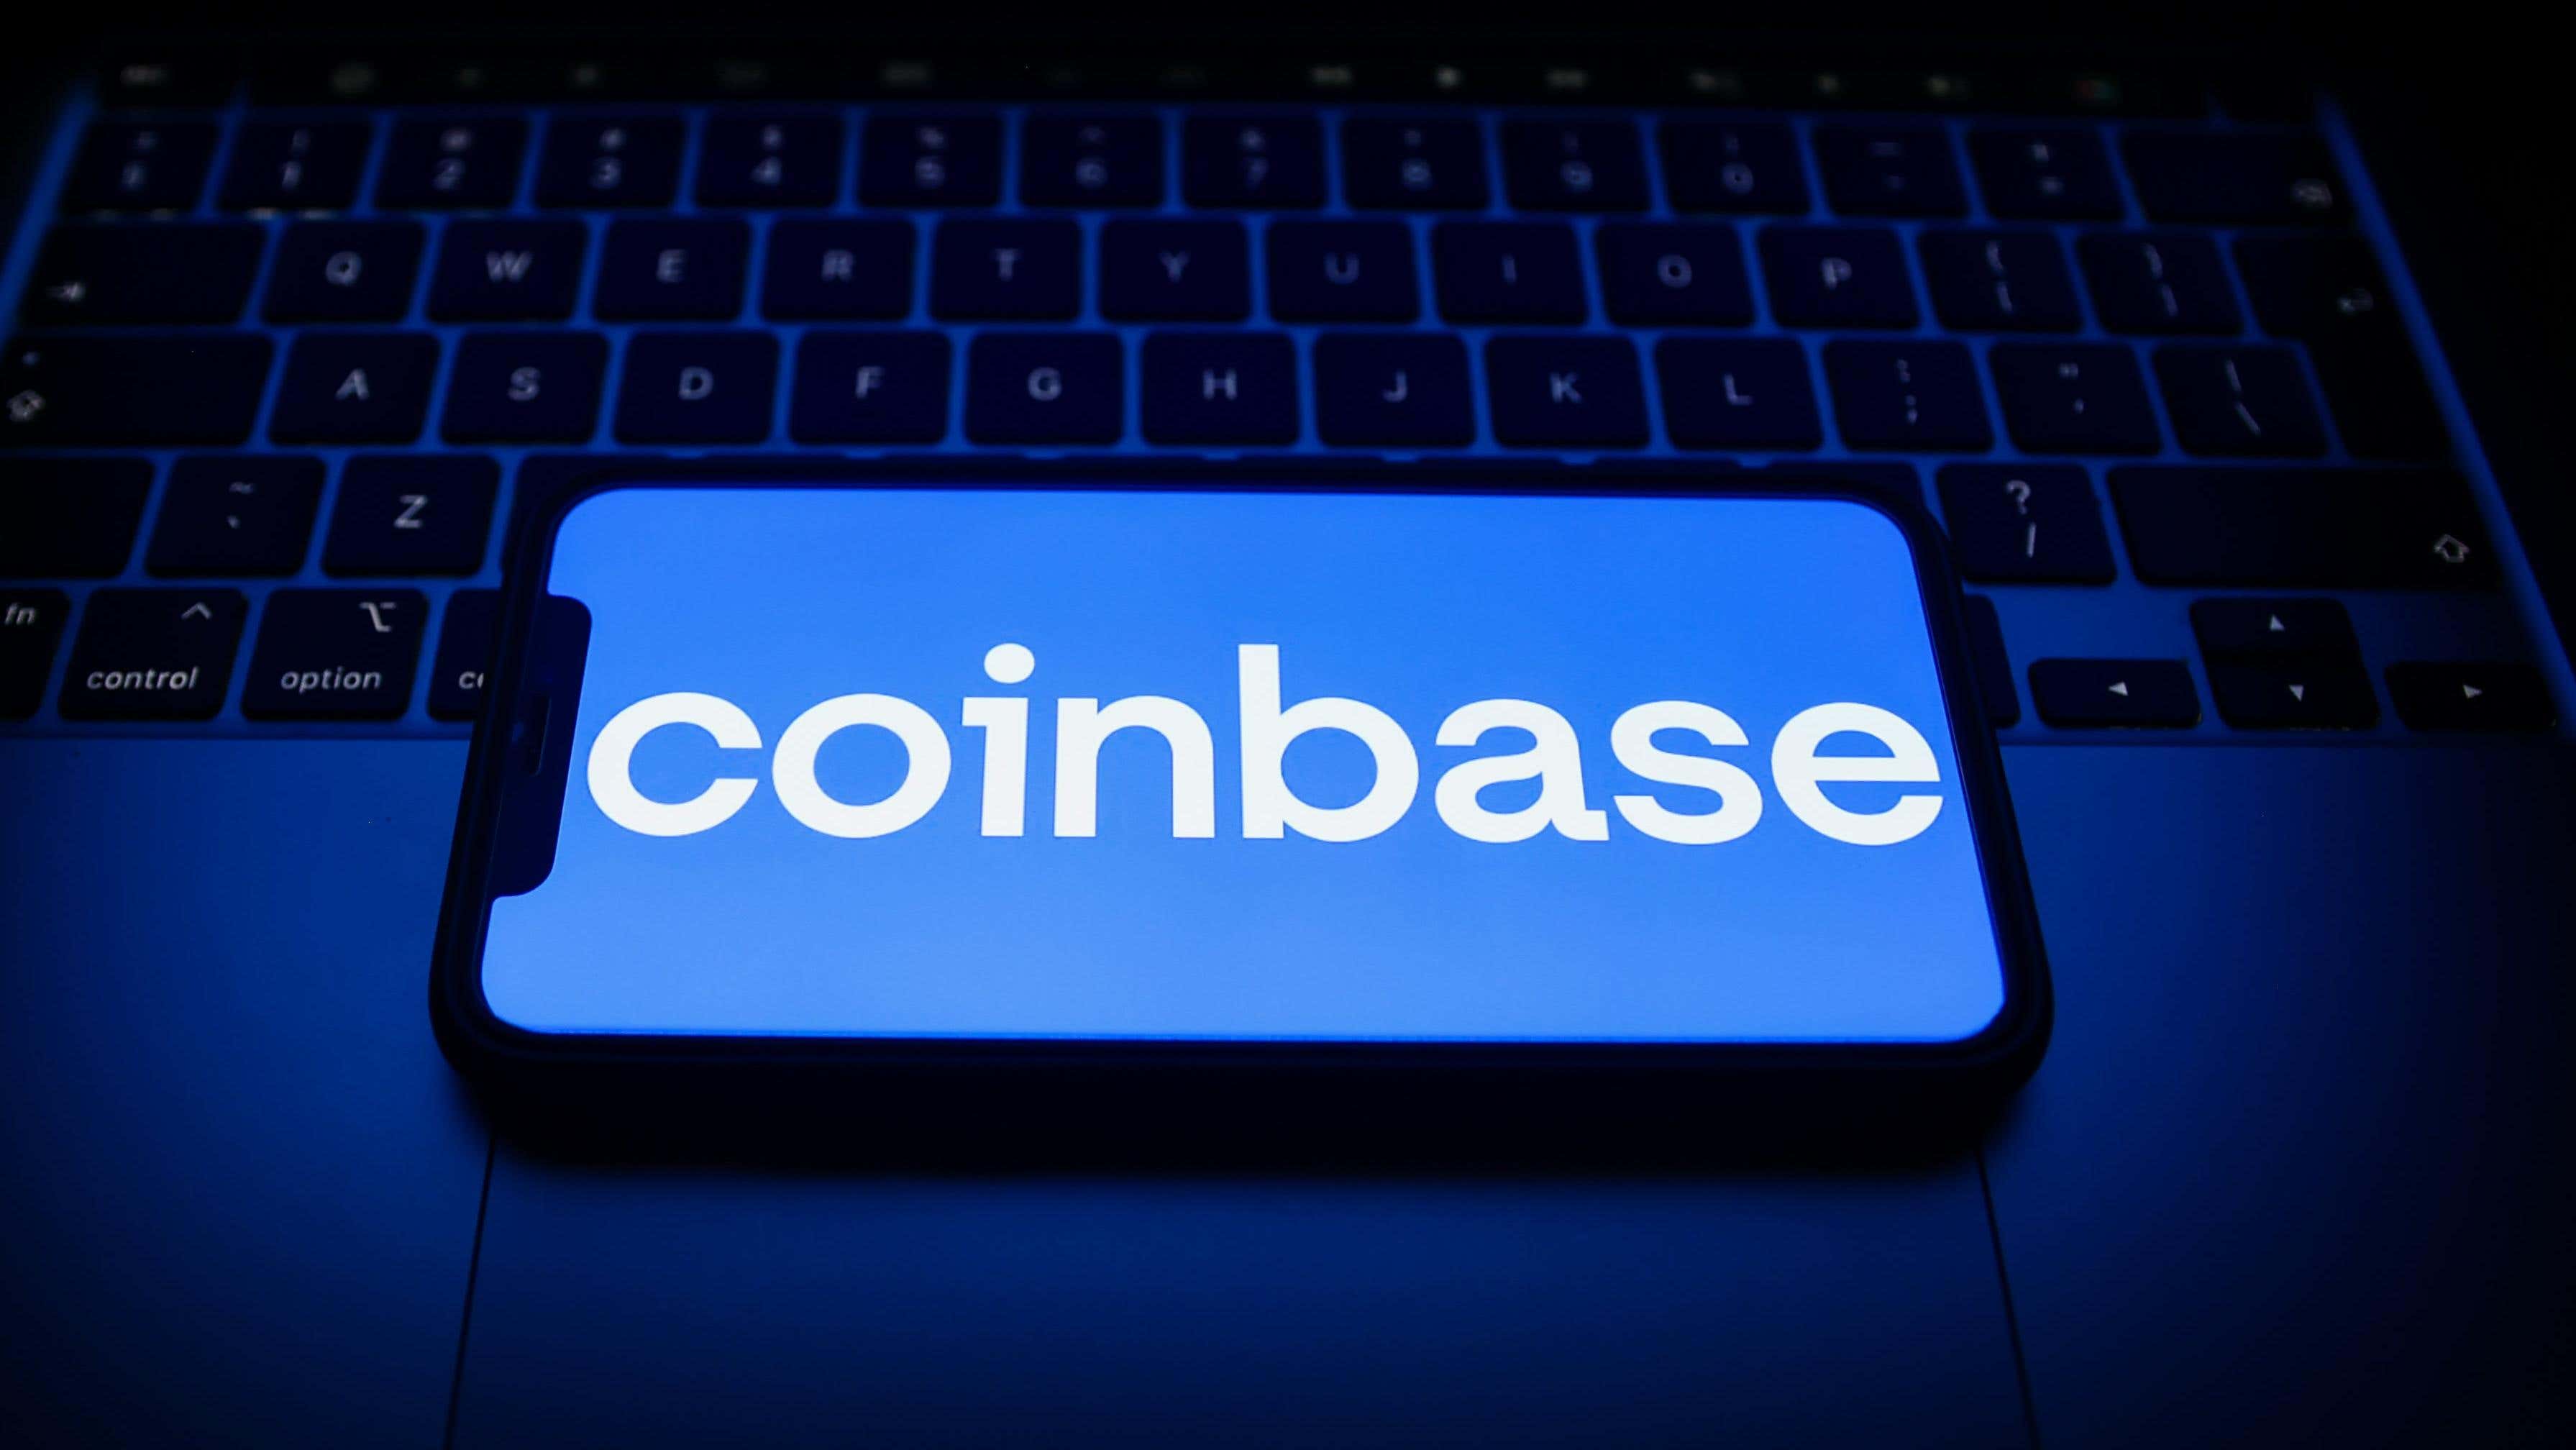 Imagen para el artículo titulado Las cuentas de Coinbase se hunden hasta cero durante una interrupción a medida que el precio de Bitcoin se dispara